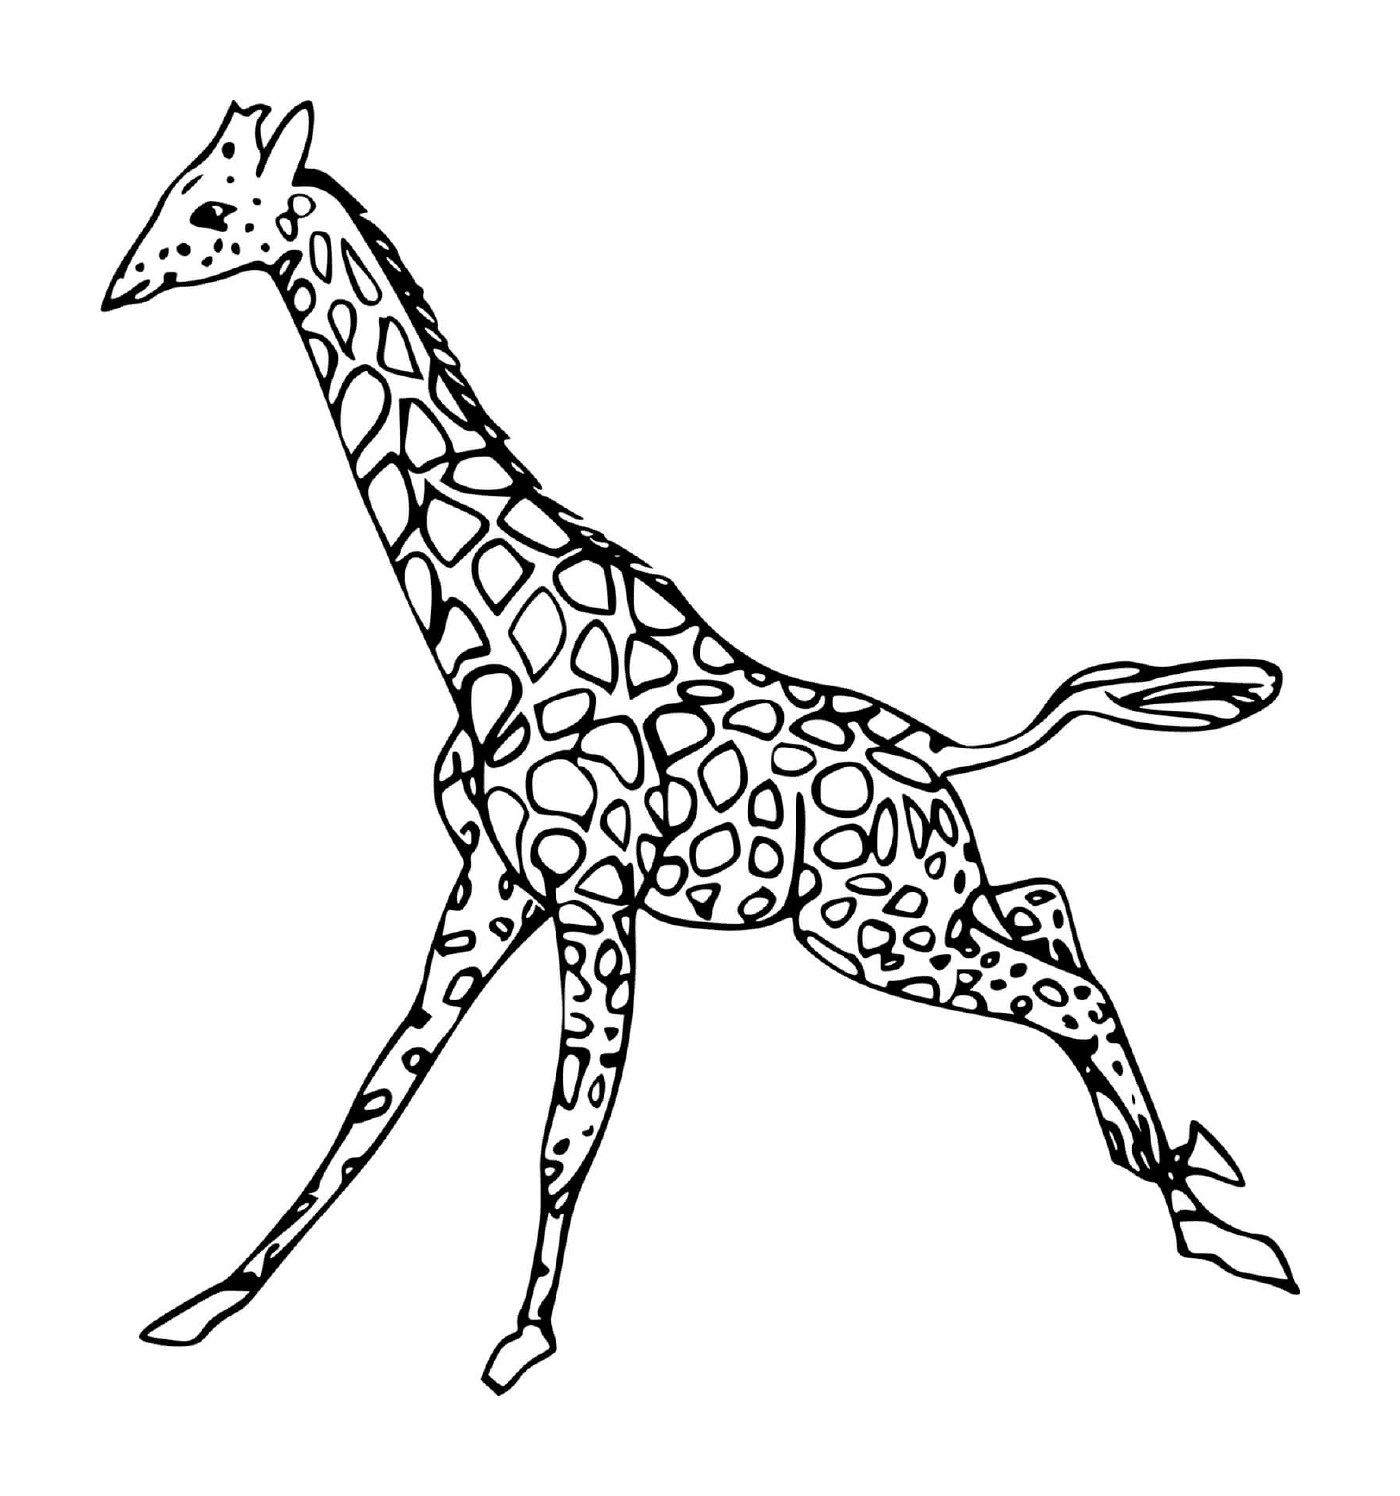  Girafe running 